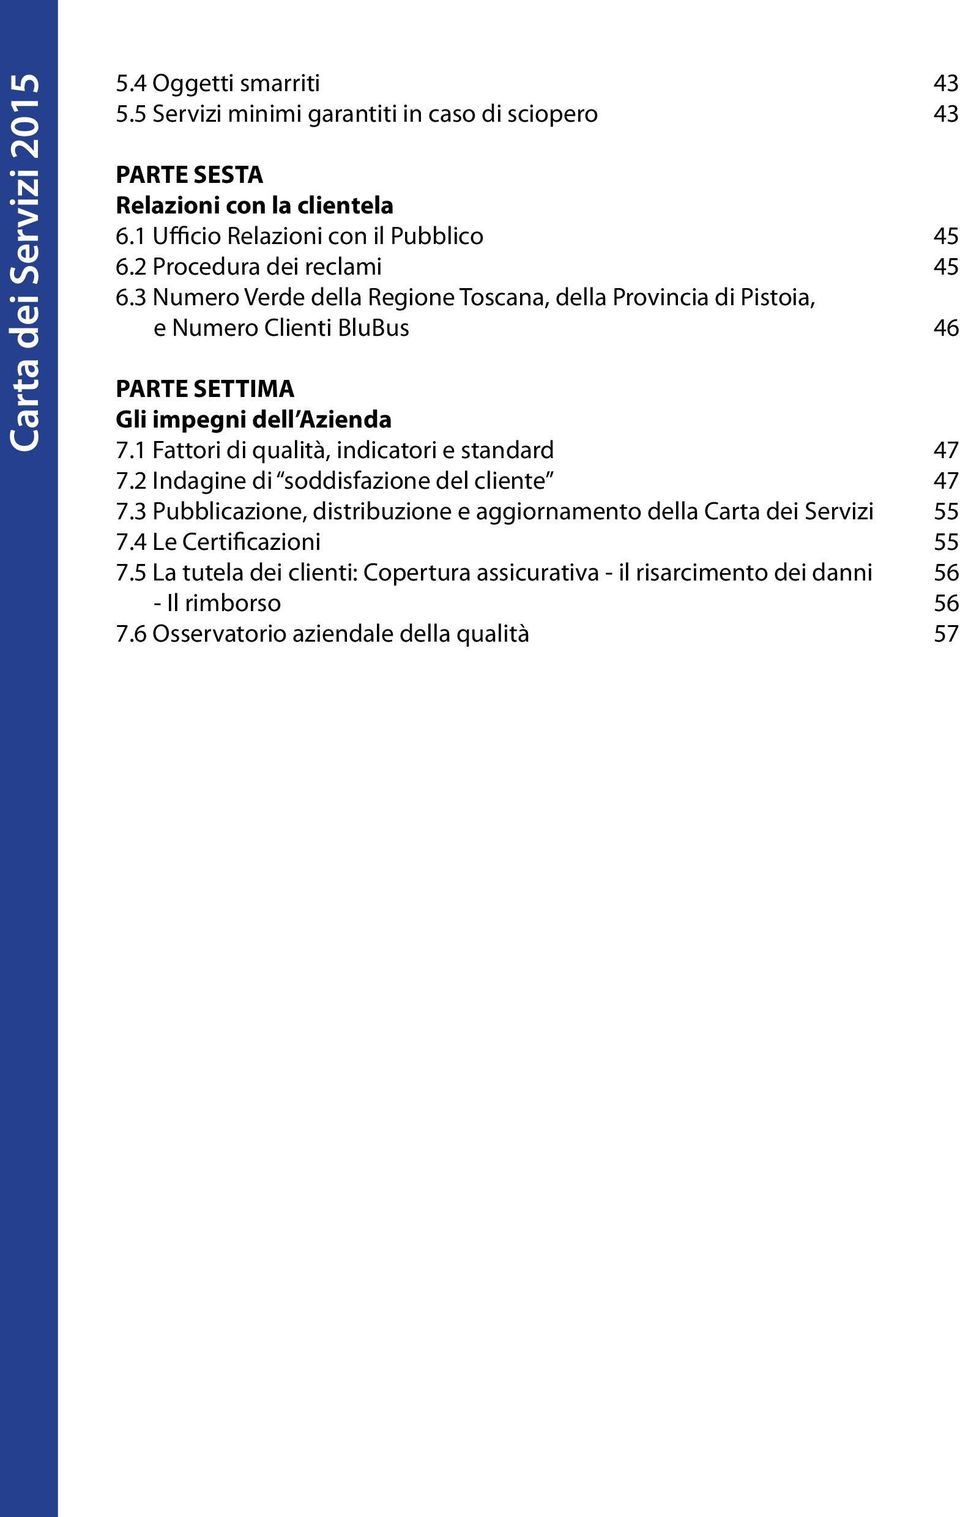 3 Numero Verde della Regione Toscana, della Provincia di Pistoia, e Numero Clienti BluBus 46 PARTE SETTIMA Gli impegni dell Azienda 7.